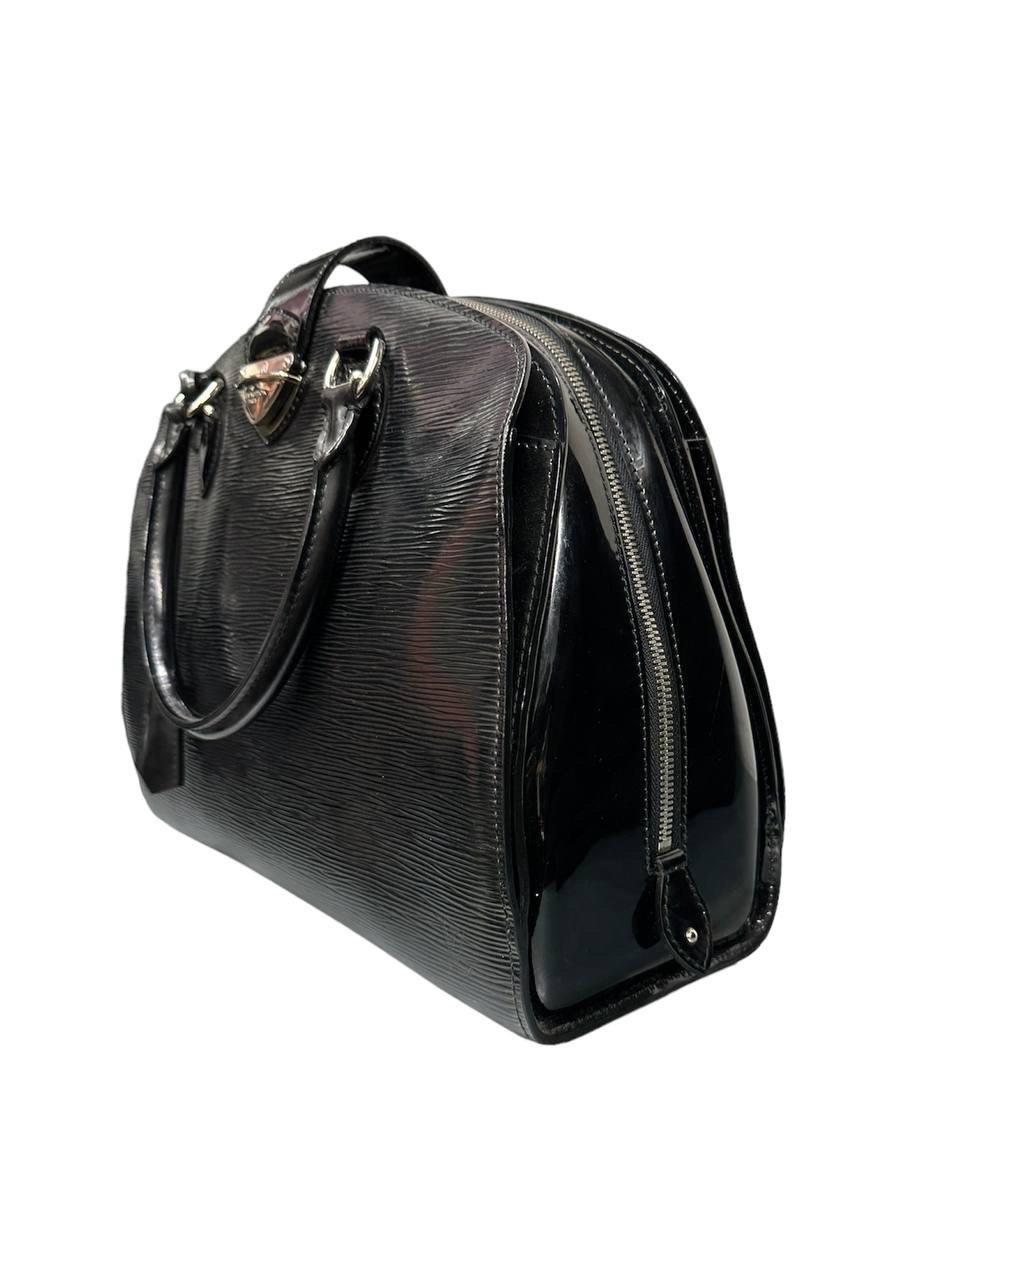 Louis Vuitton signierte Tasche, Modell Montaigne, aus Epi-Canvas in schwarzem Lackleder und silberner Hardware. Ausgestattet mit doppeltem Ledergriff zum Tragen der Handtasche. Innen mit schwarzem Alcantara ausgekleidet, sehr geräumig. Ausgestattet